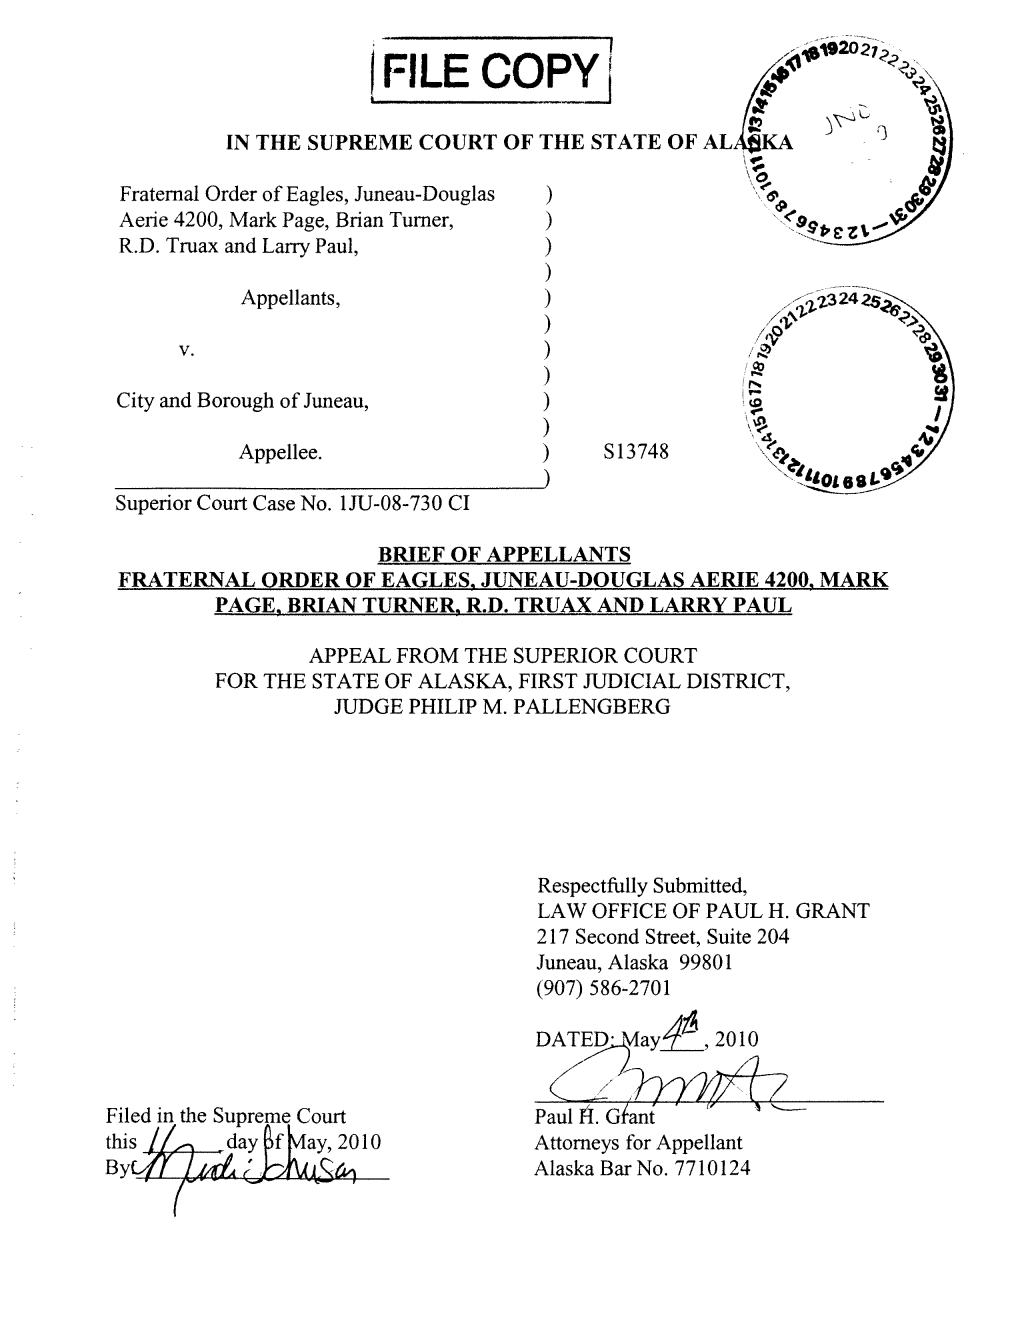 Fraternal Order of Eagles V. Juneau, Case No. S-13748, Appellants' Brief